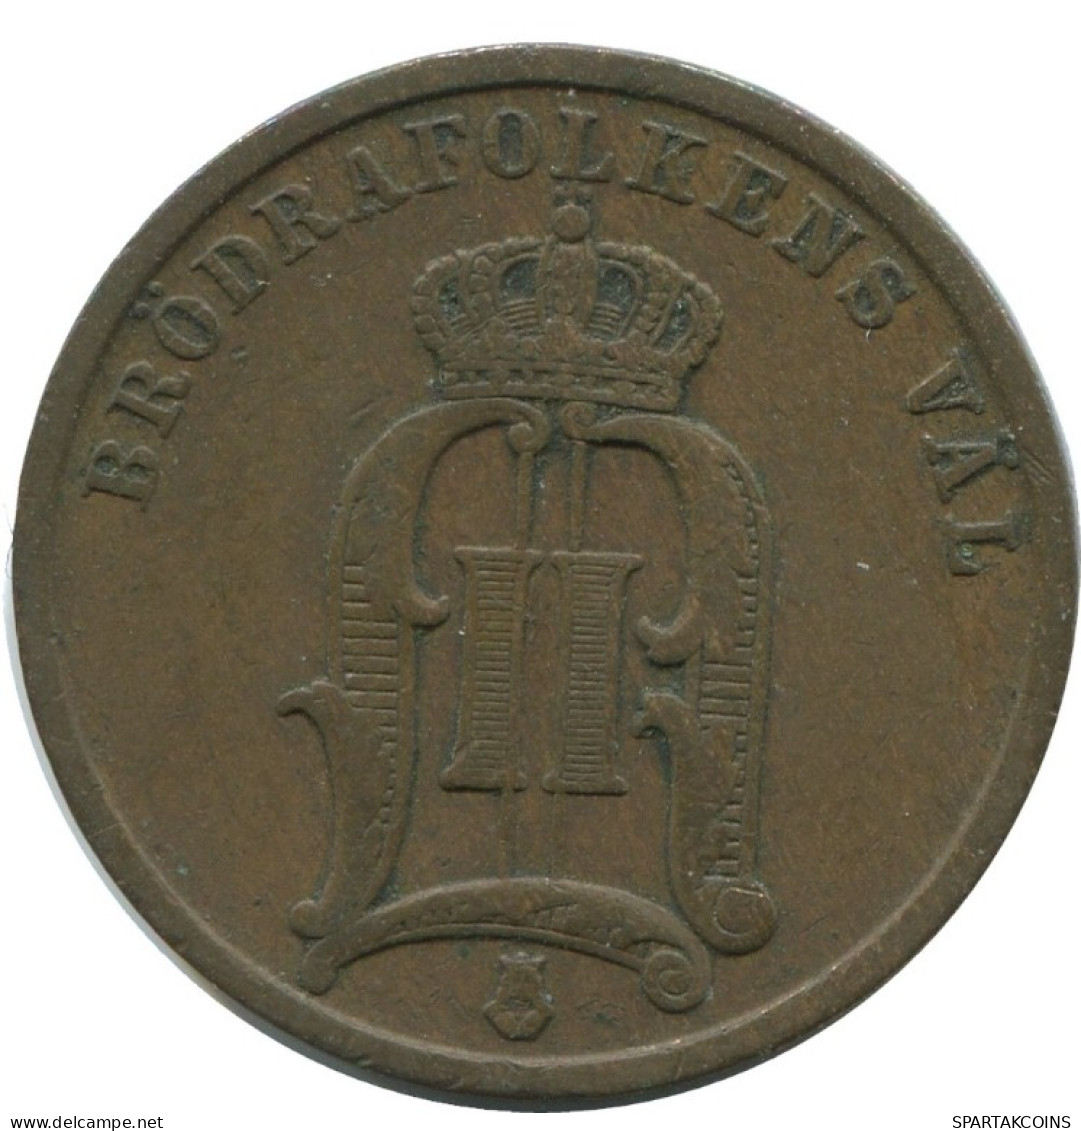 2 ORE 1900 SUECIA SWEDEN Moneda #AC967.2.E.A - Zweden